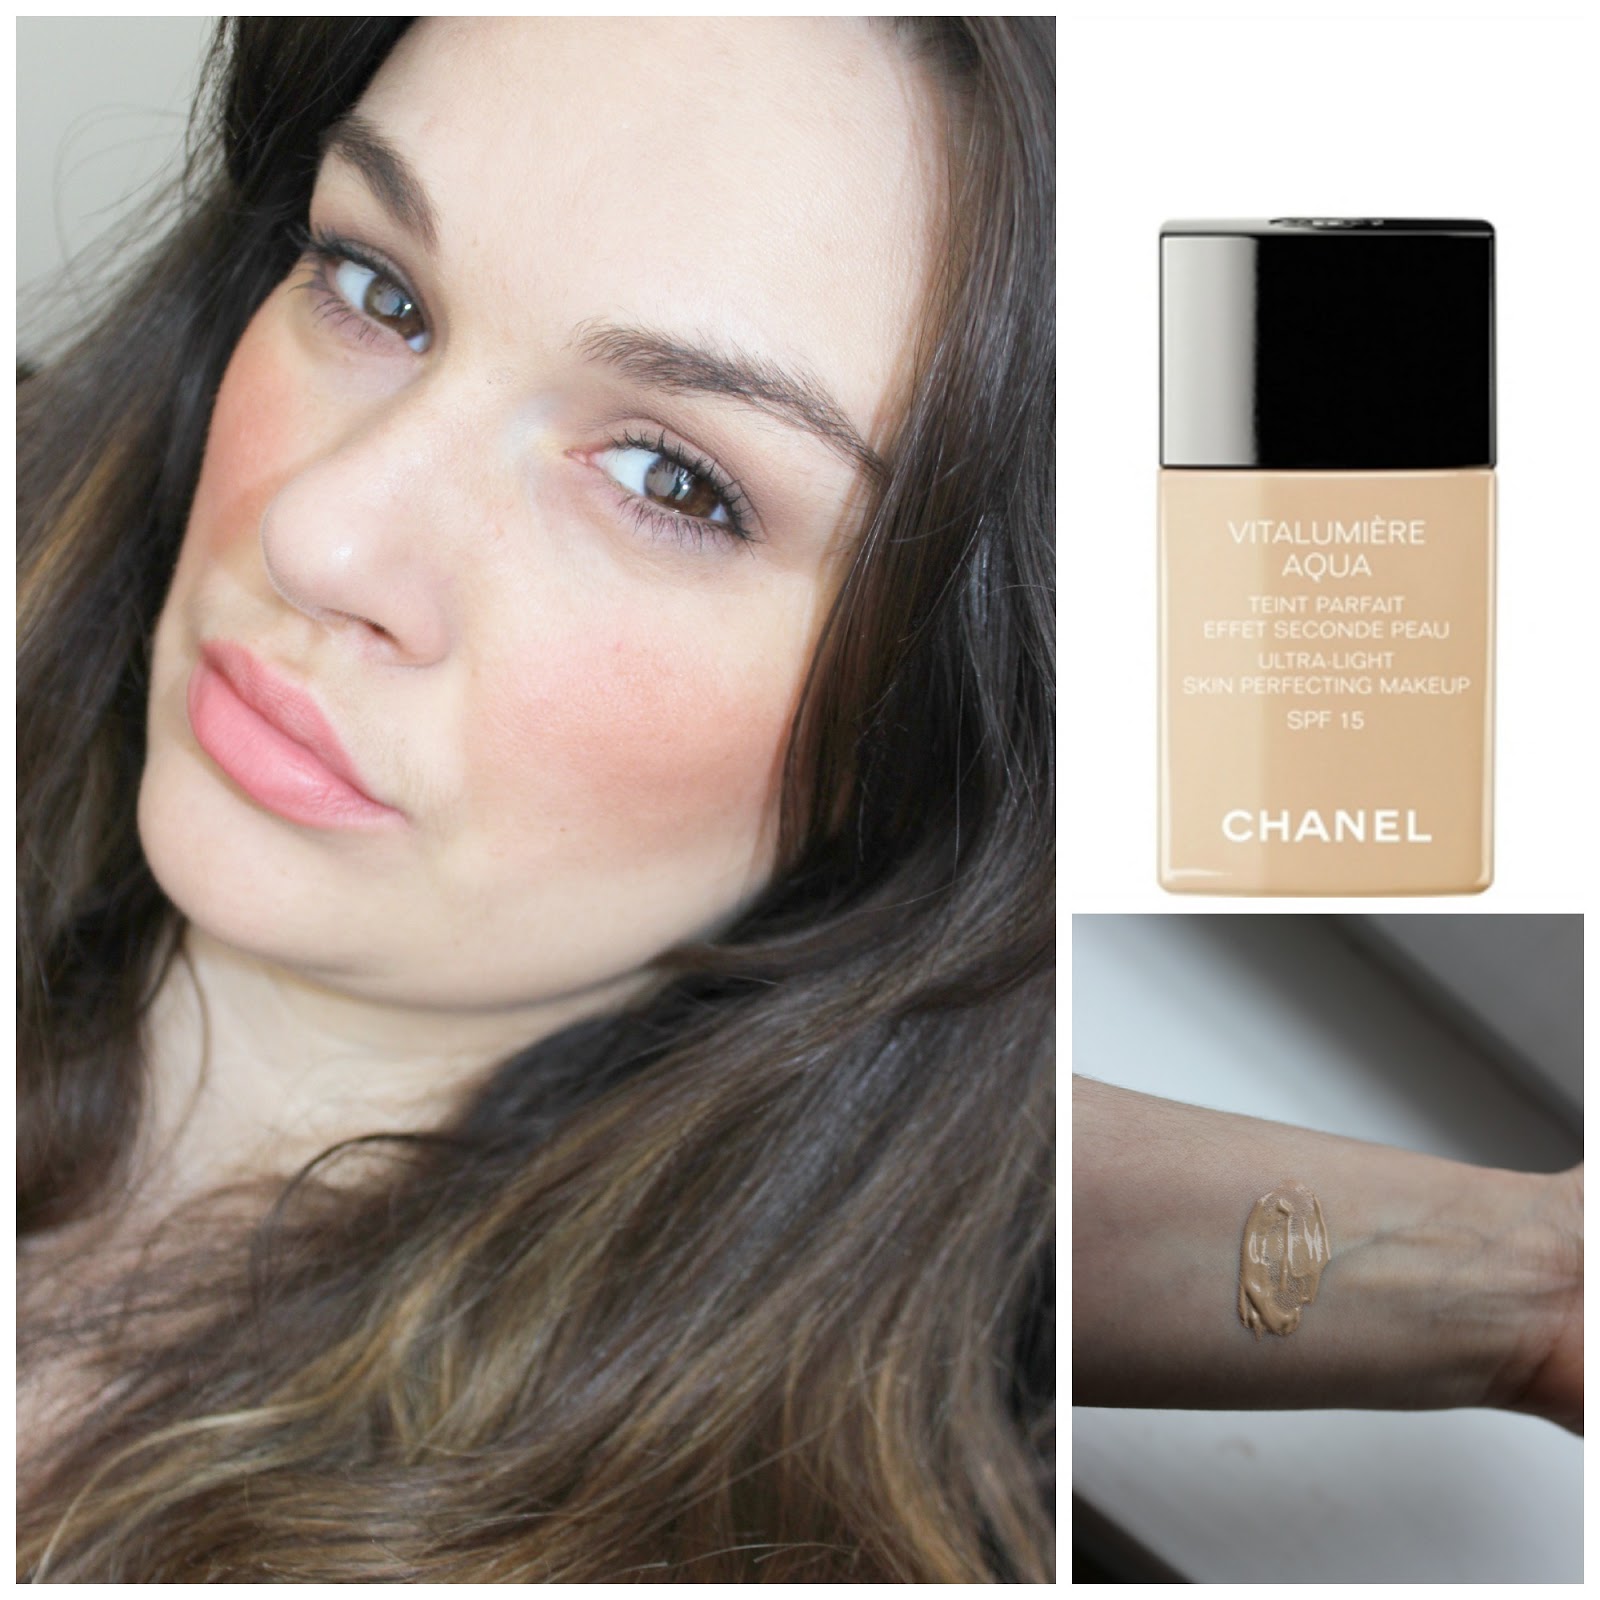 Beauty Bucketeer - Chanel Vitalumiere Aqua vs Chanel Perfection